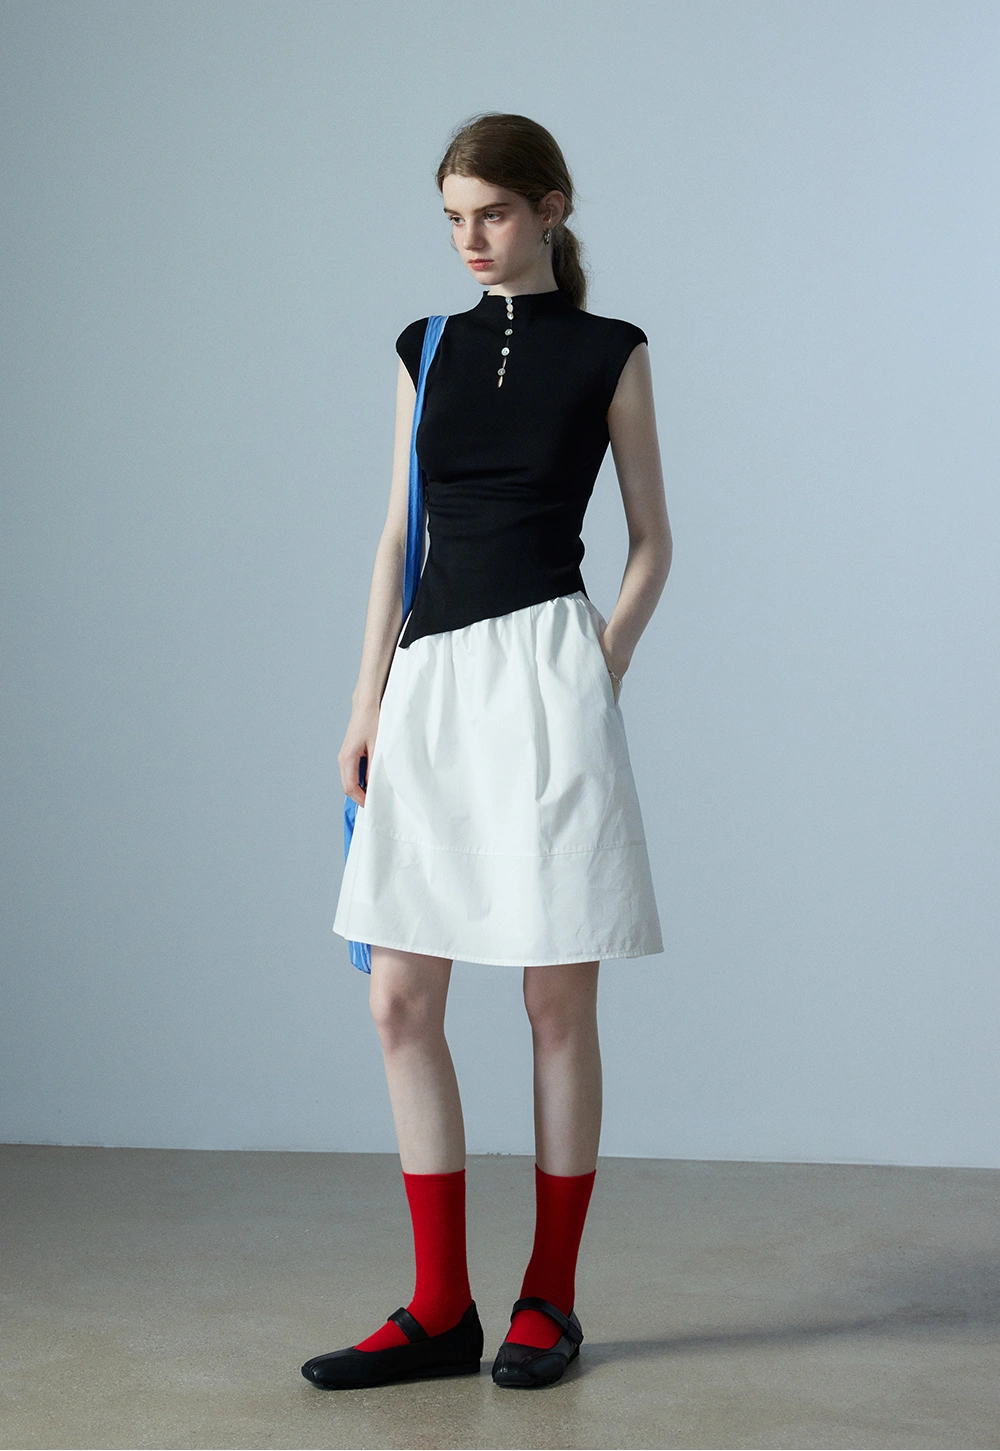 Women's Elastic Waist A-Line Skirt